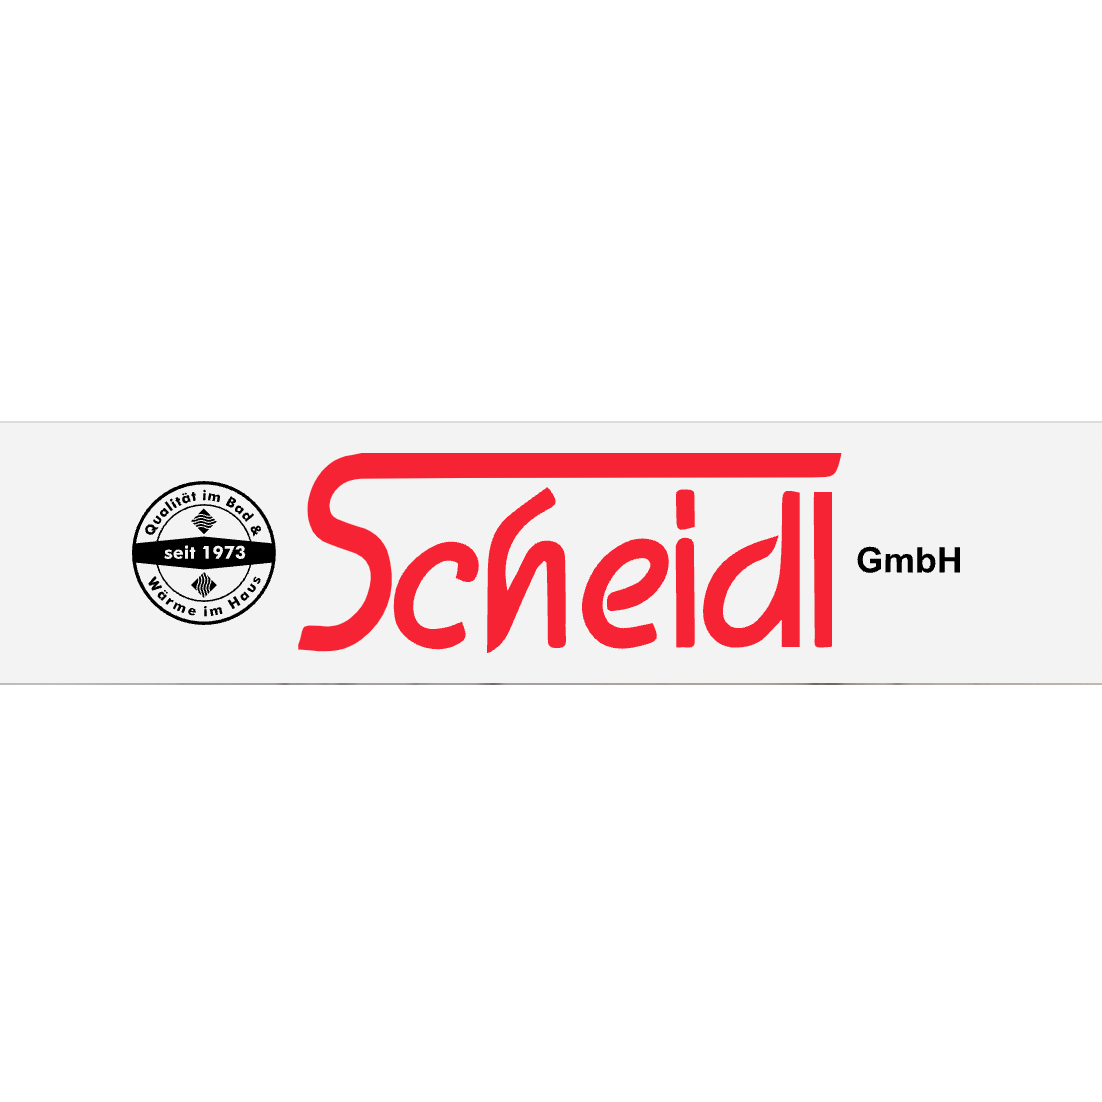 Scheidl GmbH  